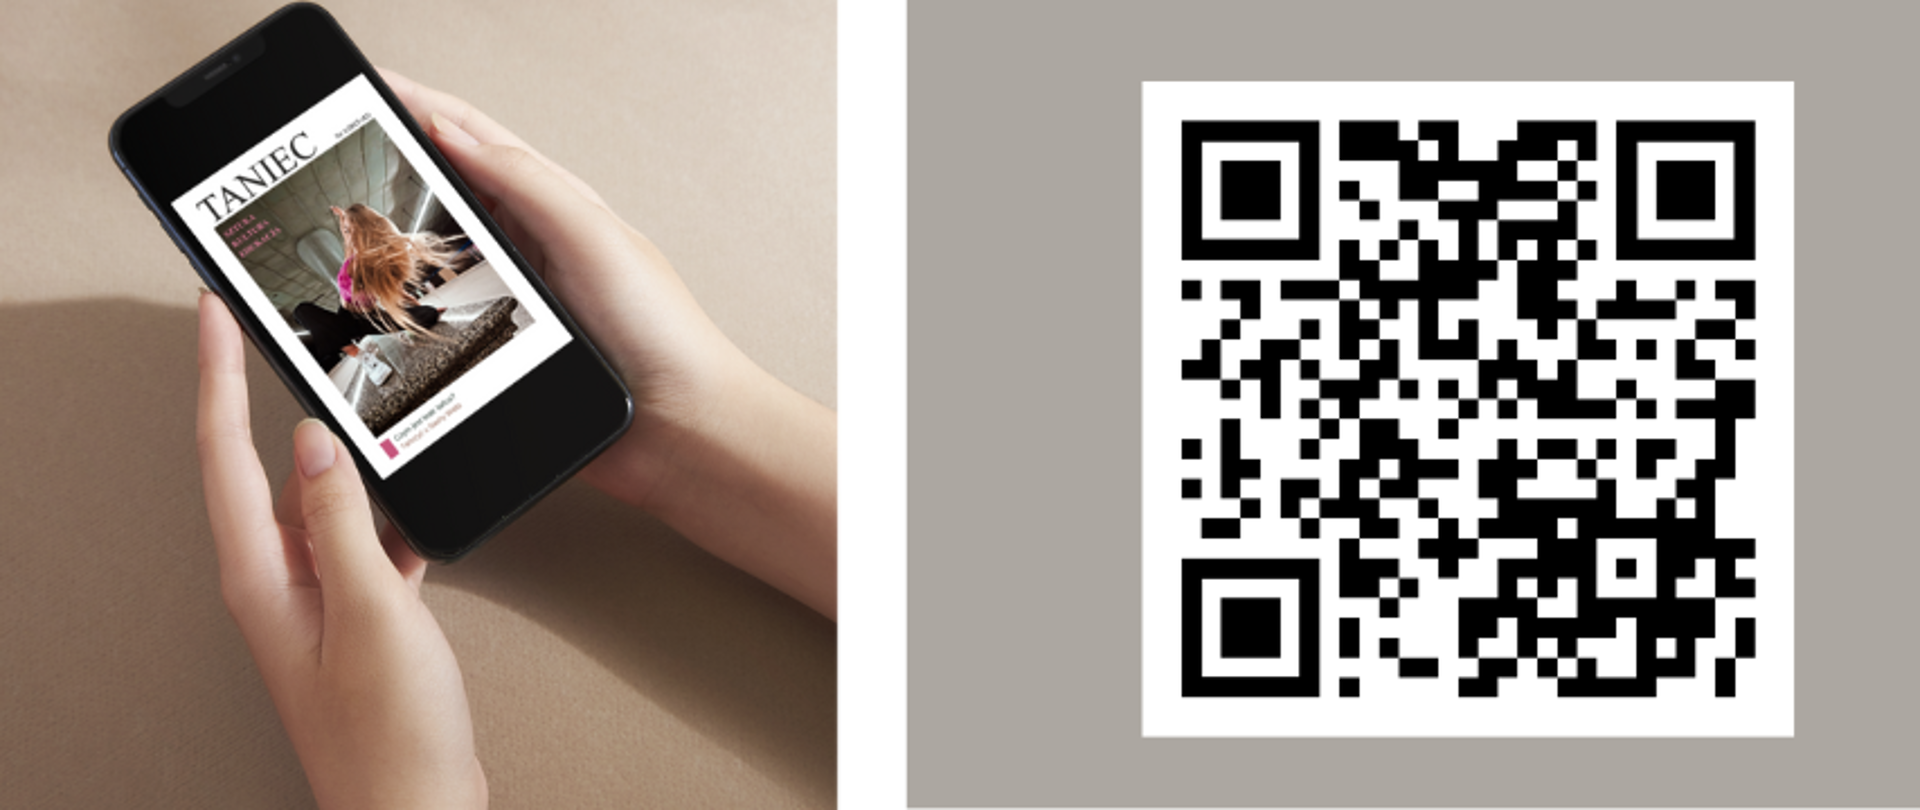 Zdjęcie smartfonu z lewej strony, kodem QR po stronie prawej i tekstem "Zapraszamy do lektury nowego wydania Tańca"